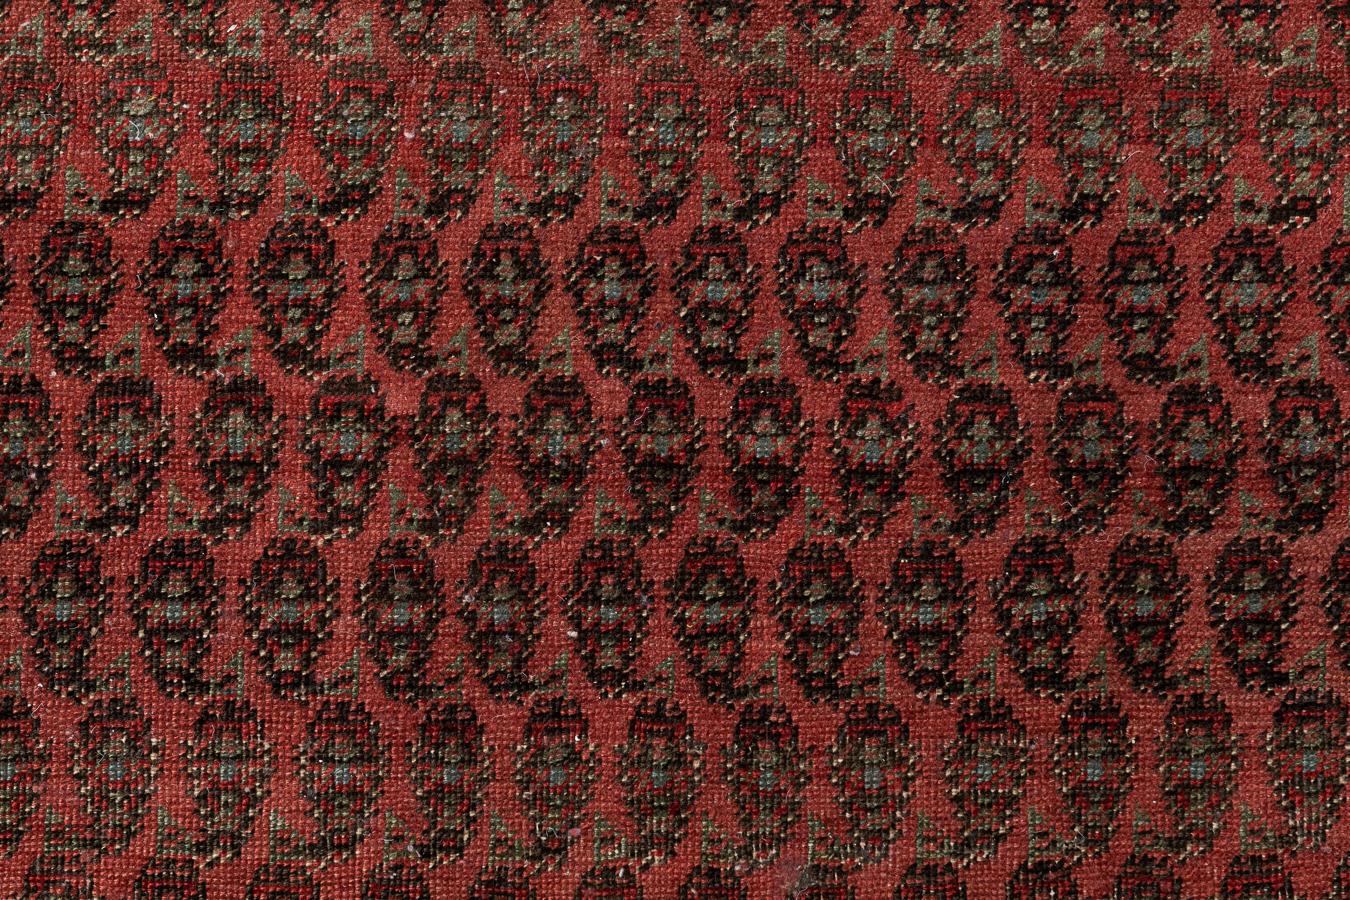 Seraband - Perse centrale occidentale

La laine étincelante et les couleurs vives teintes avec des colorants naturels donnent à cette galerie persane Seraband, vieille de 120 ans, un effet vibrant. La galerie est composée de champs rouges avec des